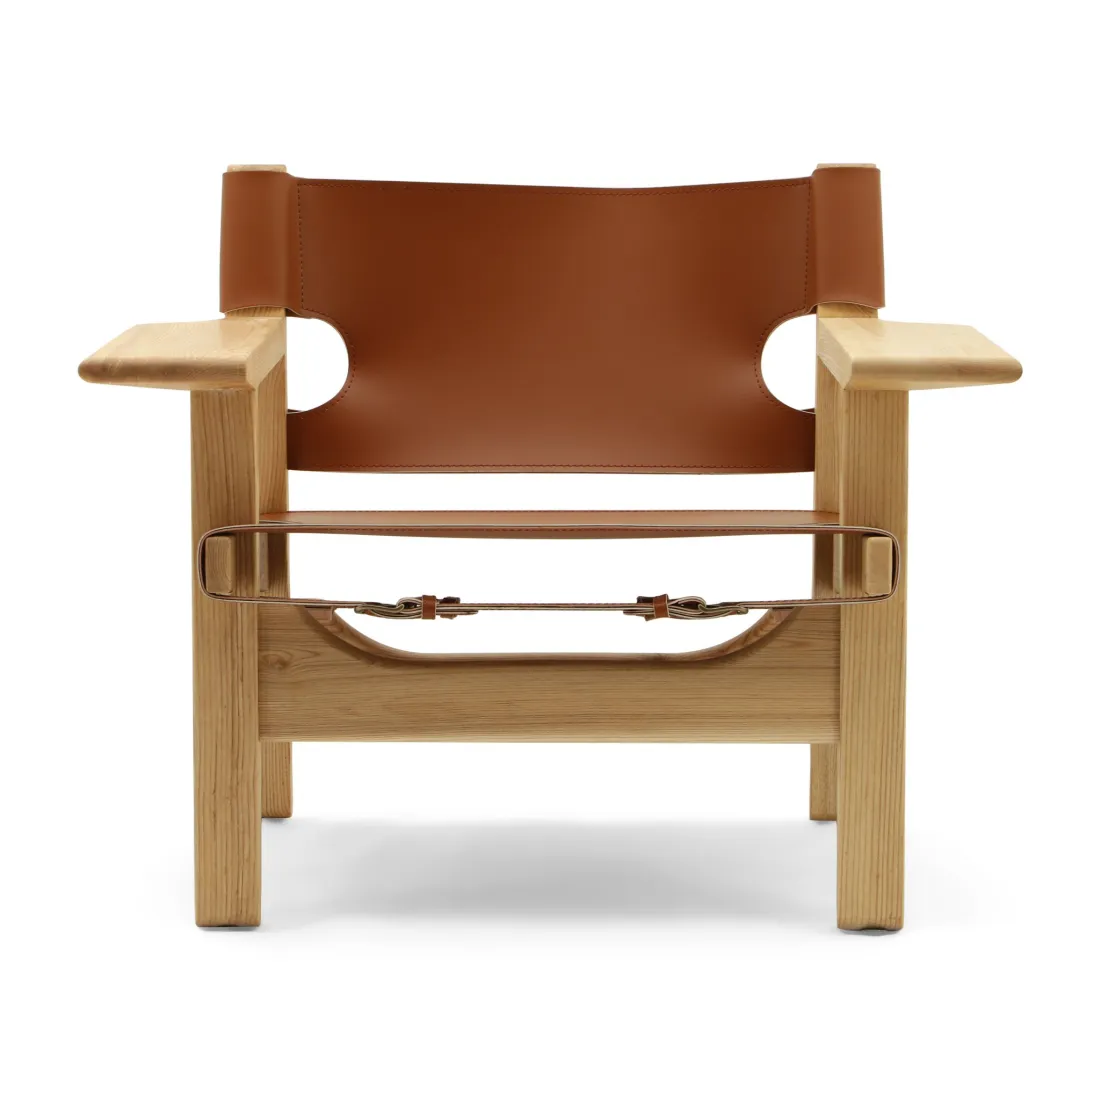 As cadeiras retro encantadoras do couro combinadas com os braços espaçosos originais dos quadros geométricos para cadeiras da sala